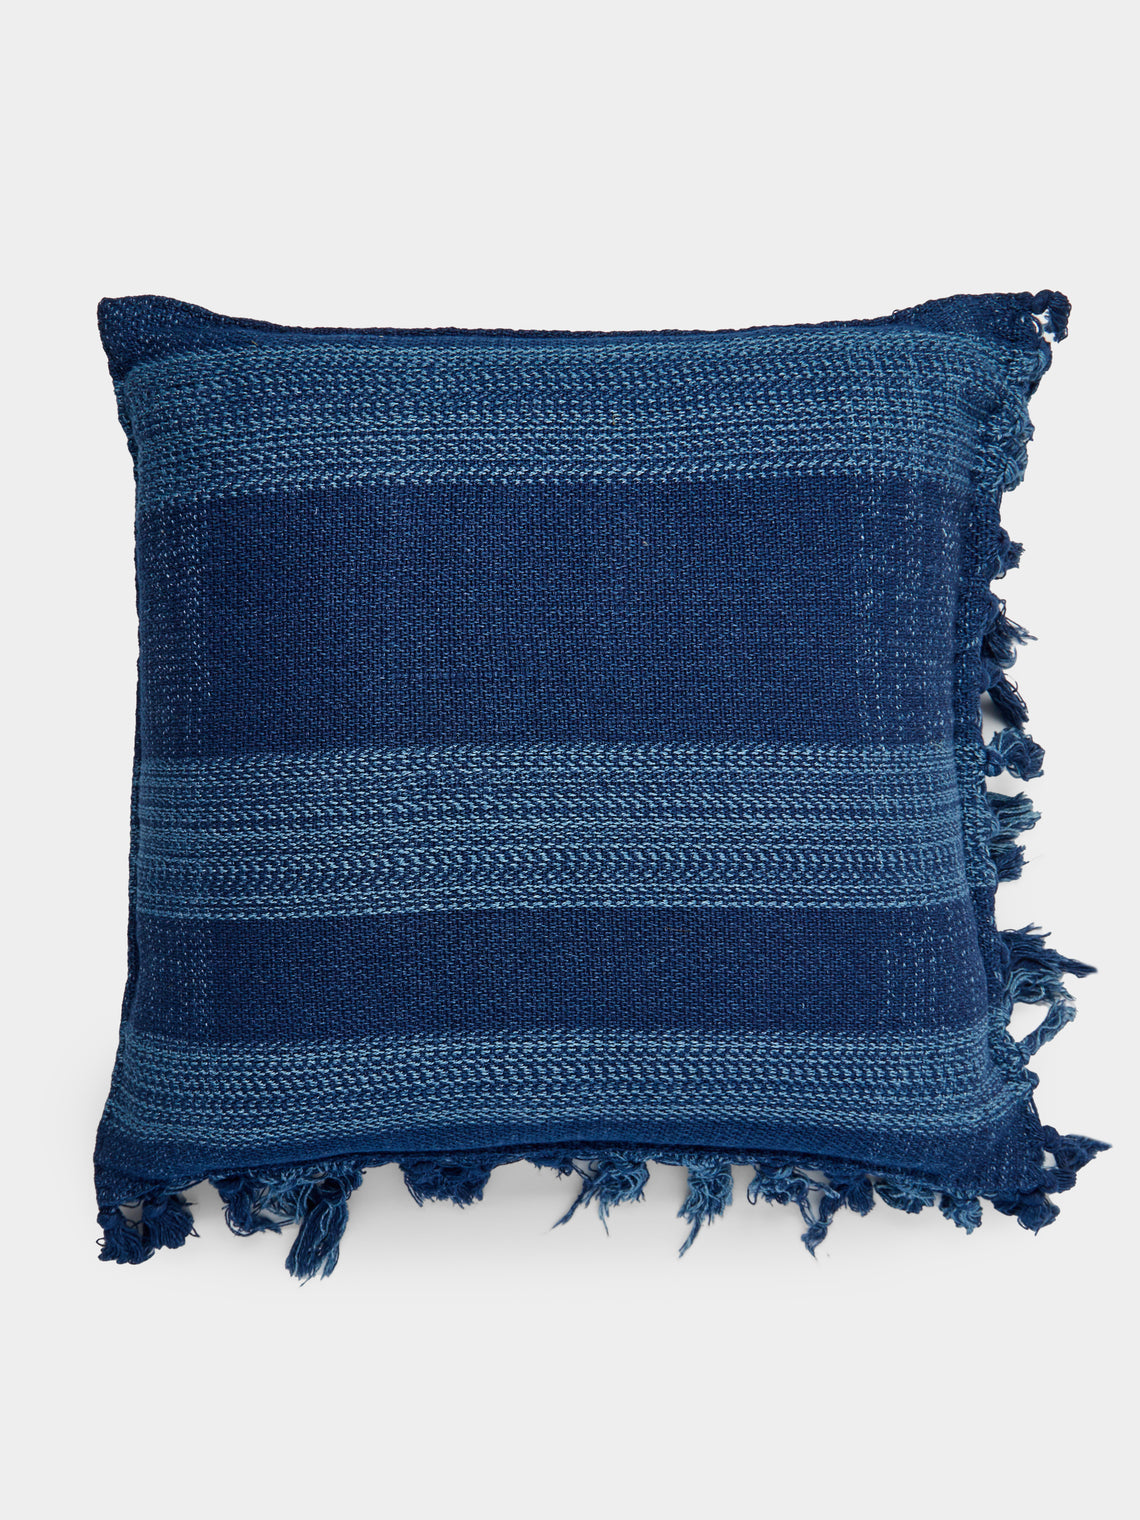 Hollie Ward - Ordahl Indigo-Dyed Cotton Cushion -  - ABASK